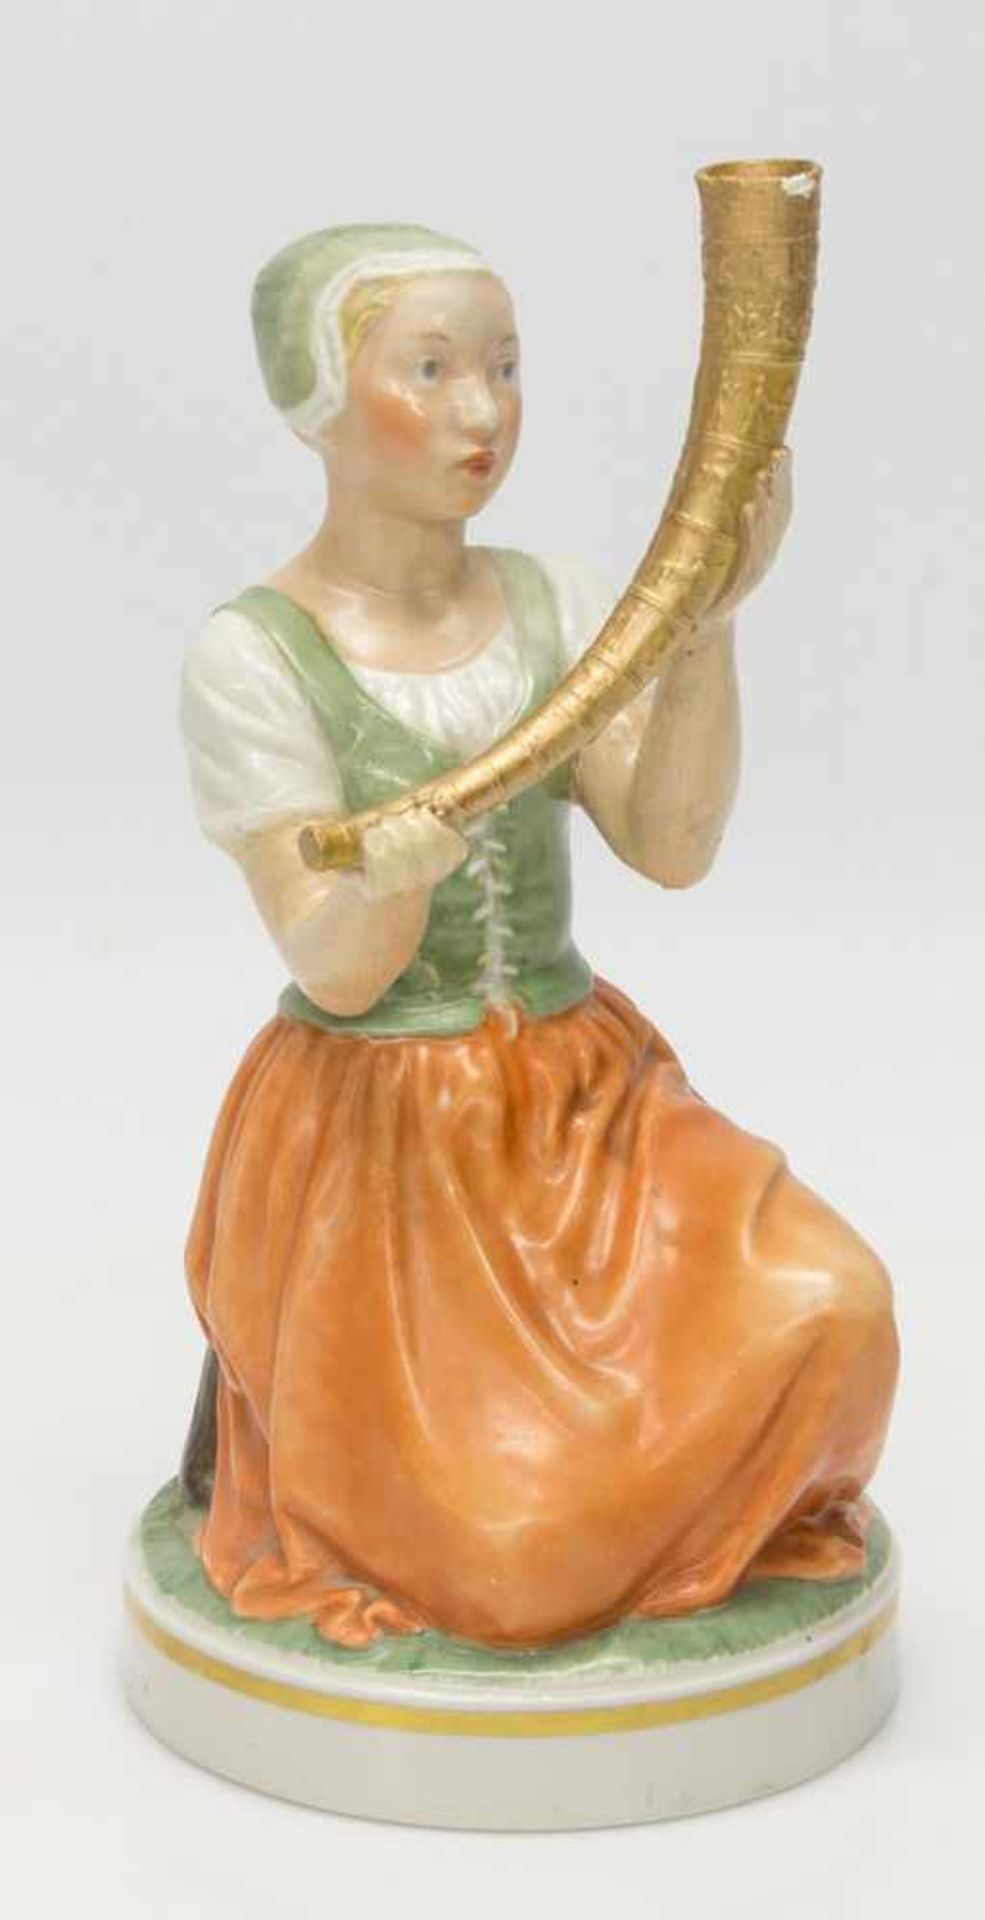 Porzellanfigur„Kristine Svendsdatter“ (K.S. fand 1639 in Gallehus das 1. Goldene Horn),